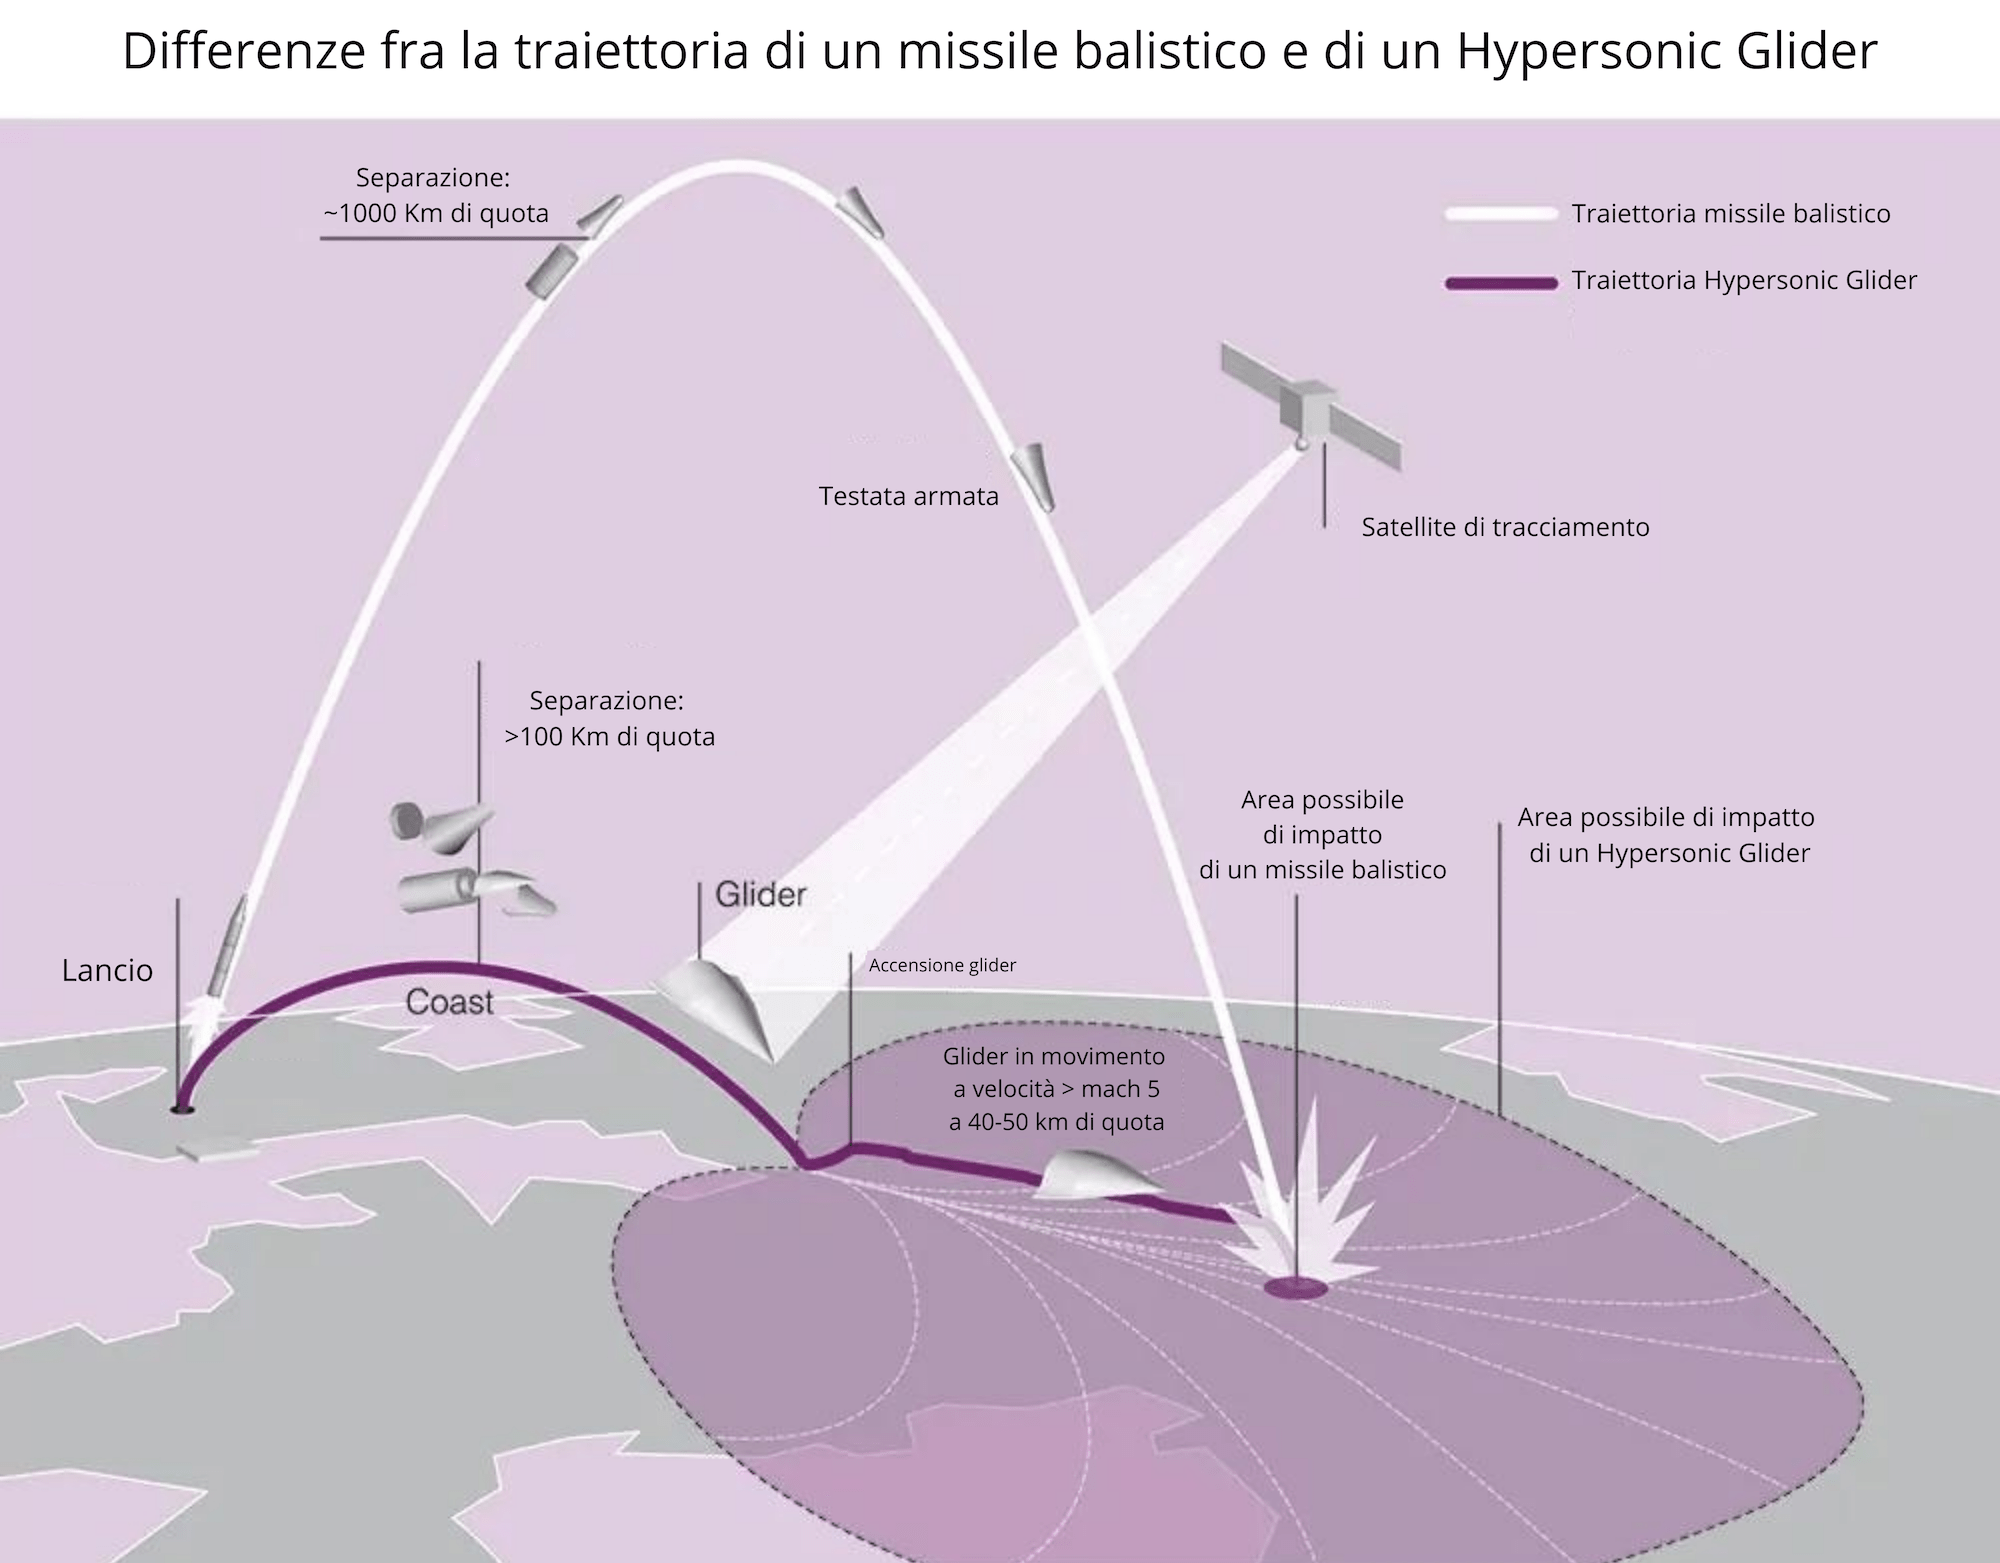 Differenza di traiettoria fra un missile balistico e un hypersonic glider. Credits: © DLR / Astrospace.it 